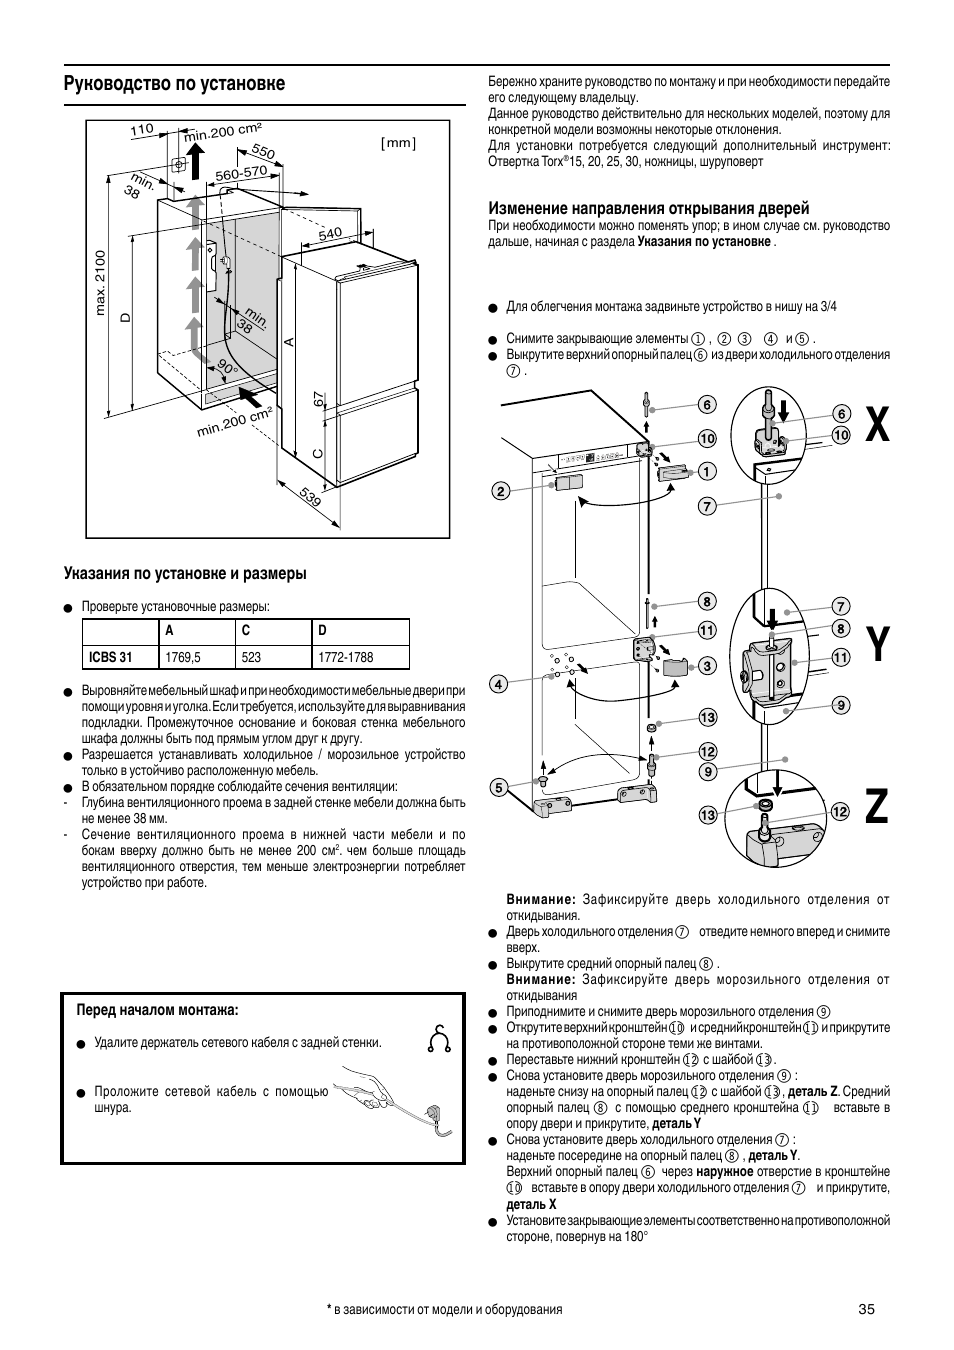 Холодильник Hyundai cc4023f схема встраивания